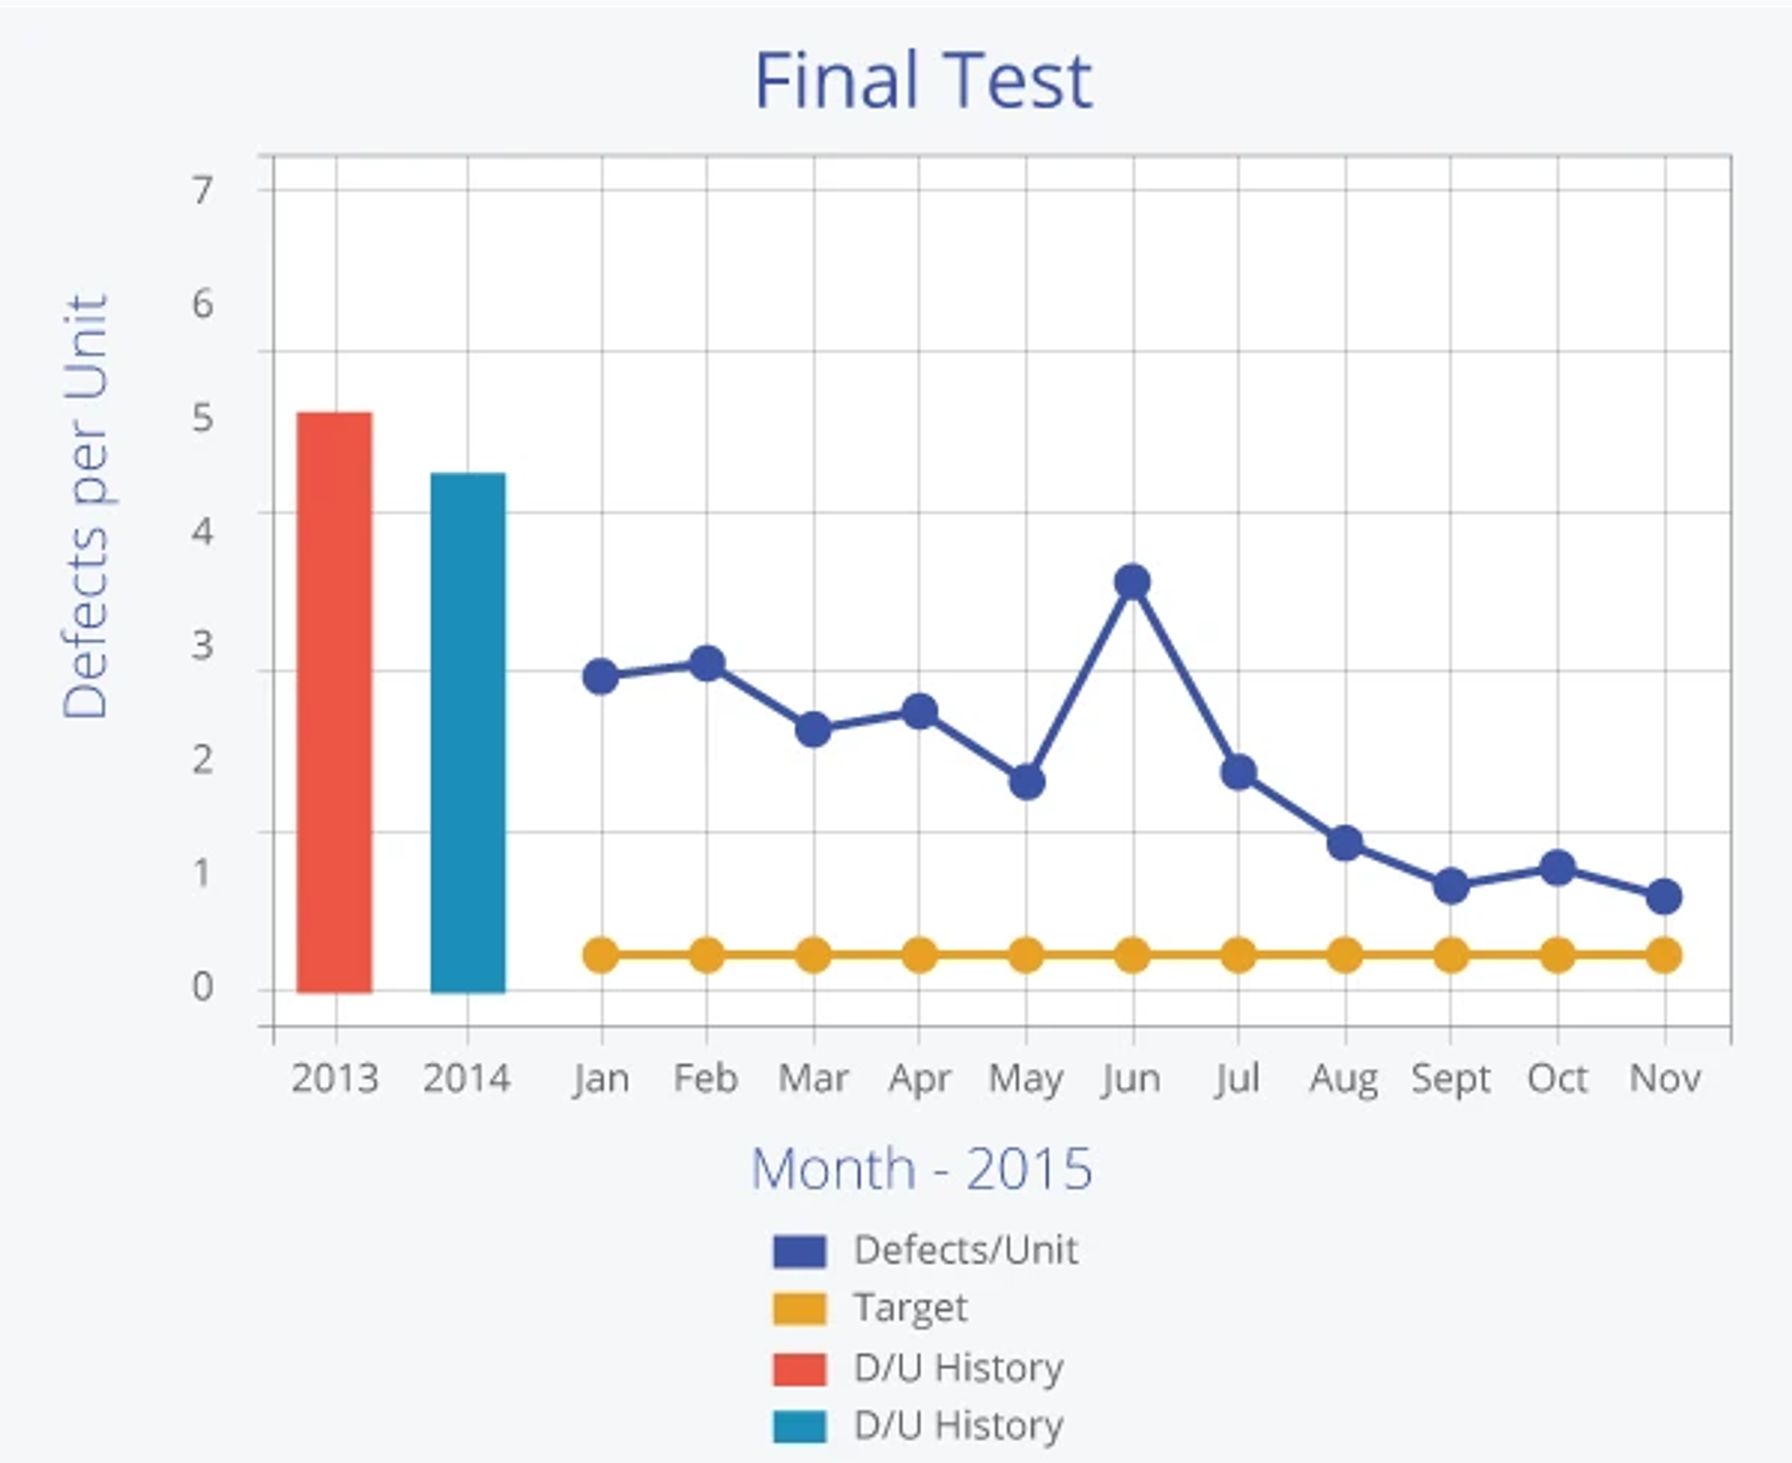 Final Test Chart 2 -- Defects per unit vs. Months